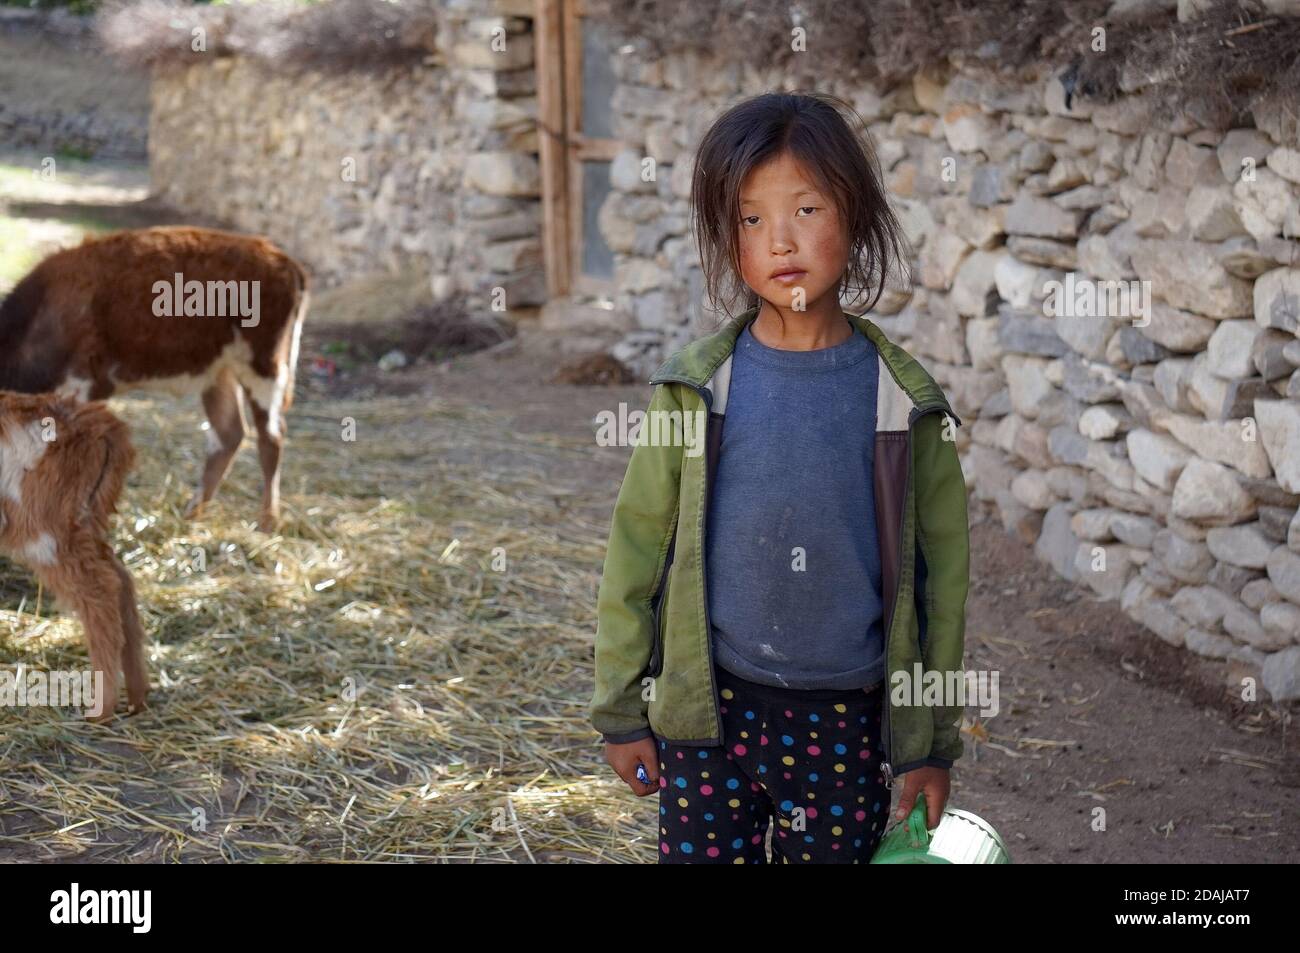 Une petite fille de nationalité tibétaine se trouve à côté d'un veau près d'une clôture en brique blanche. Banque D'Images